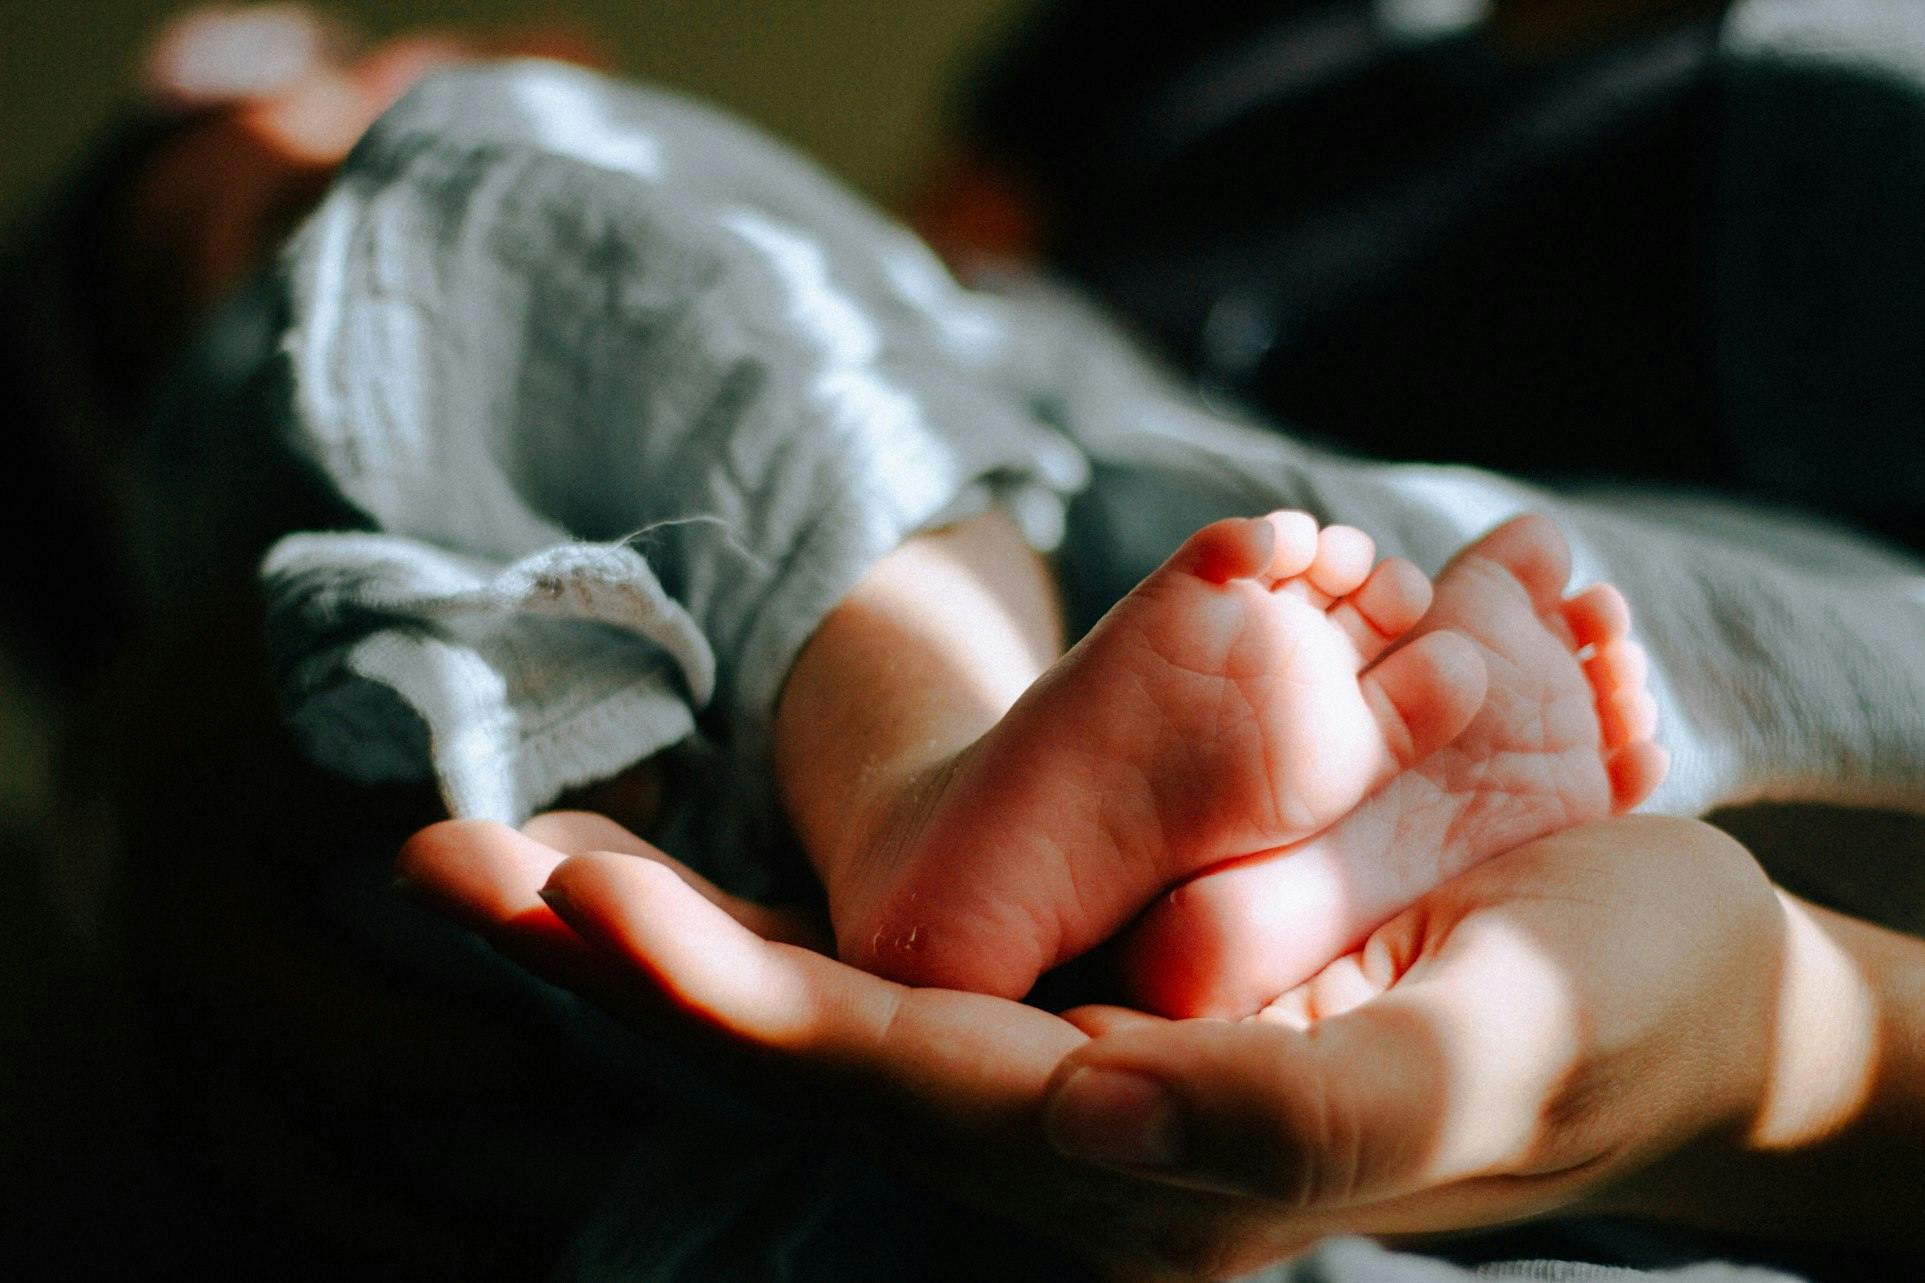 De petites jambes de bébé vêtues d'un pantalon doux et froissé reposent dans les mains bienveillantes d'un adulte. Les petons potelés sont mis en évidence par la lumière chaude qui filtre, donnant à la peau une douce teinte rosée.